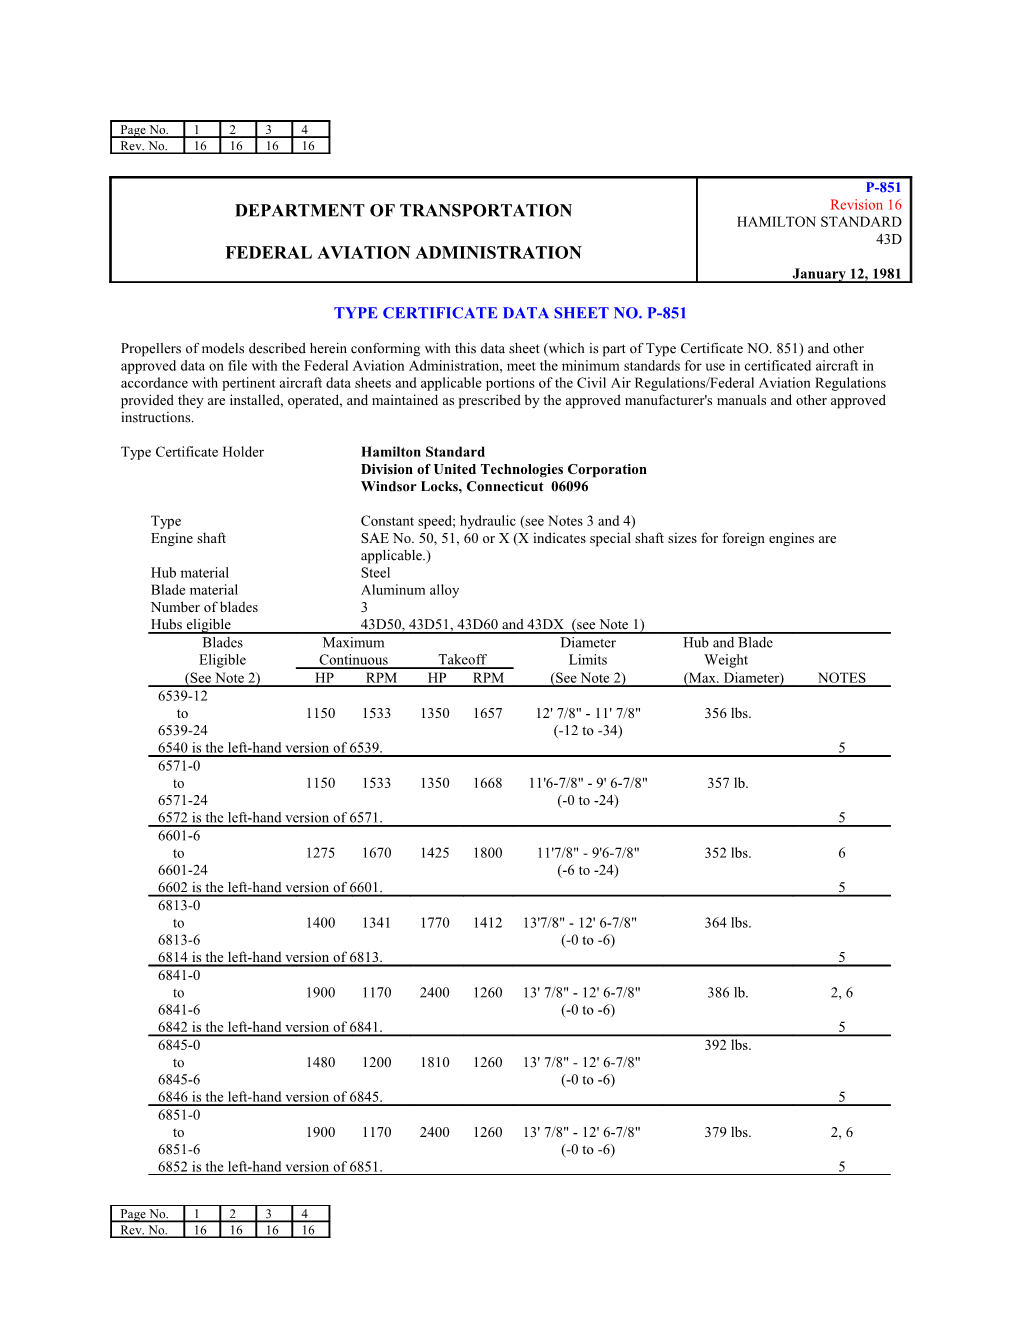 Type Certificate Data Sheet No. P-851